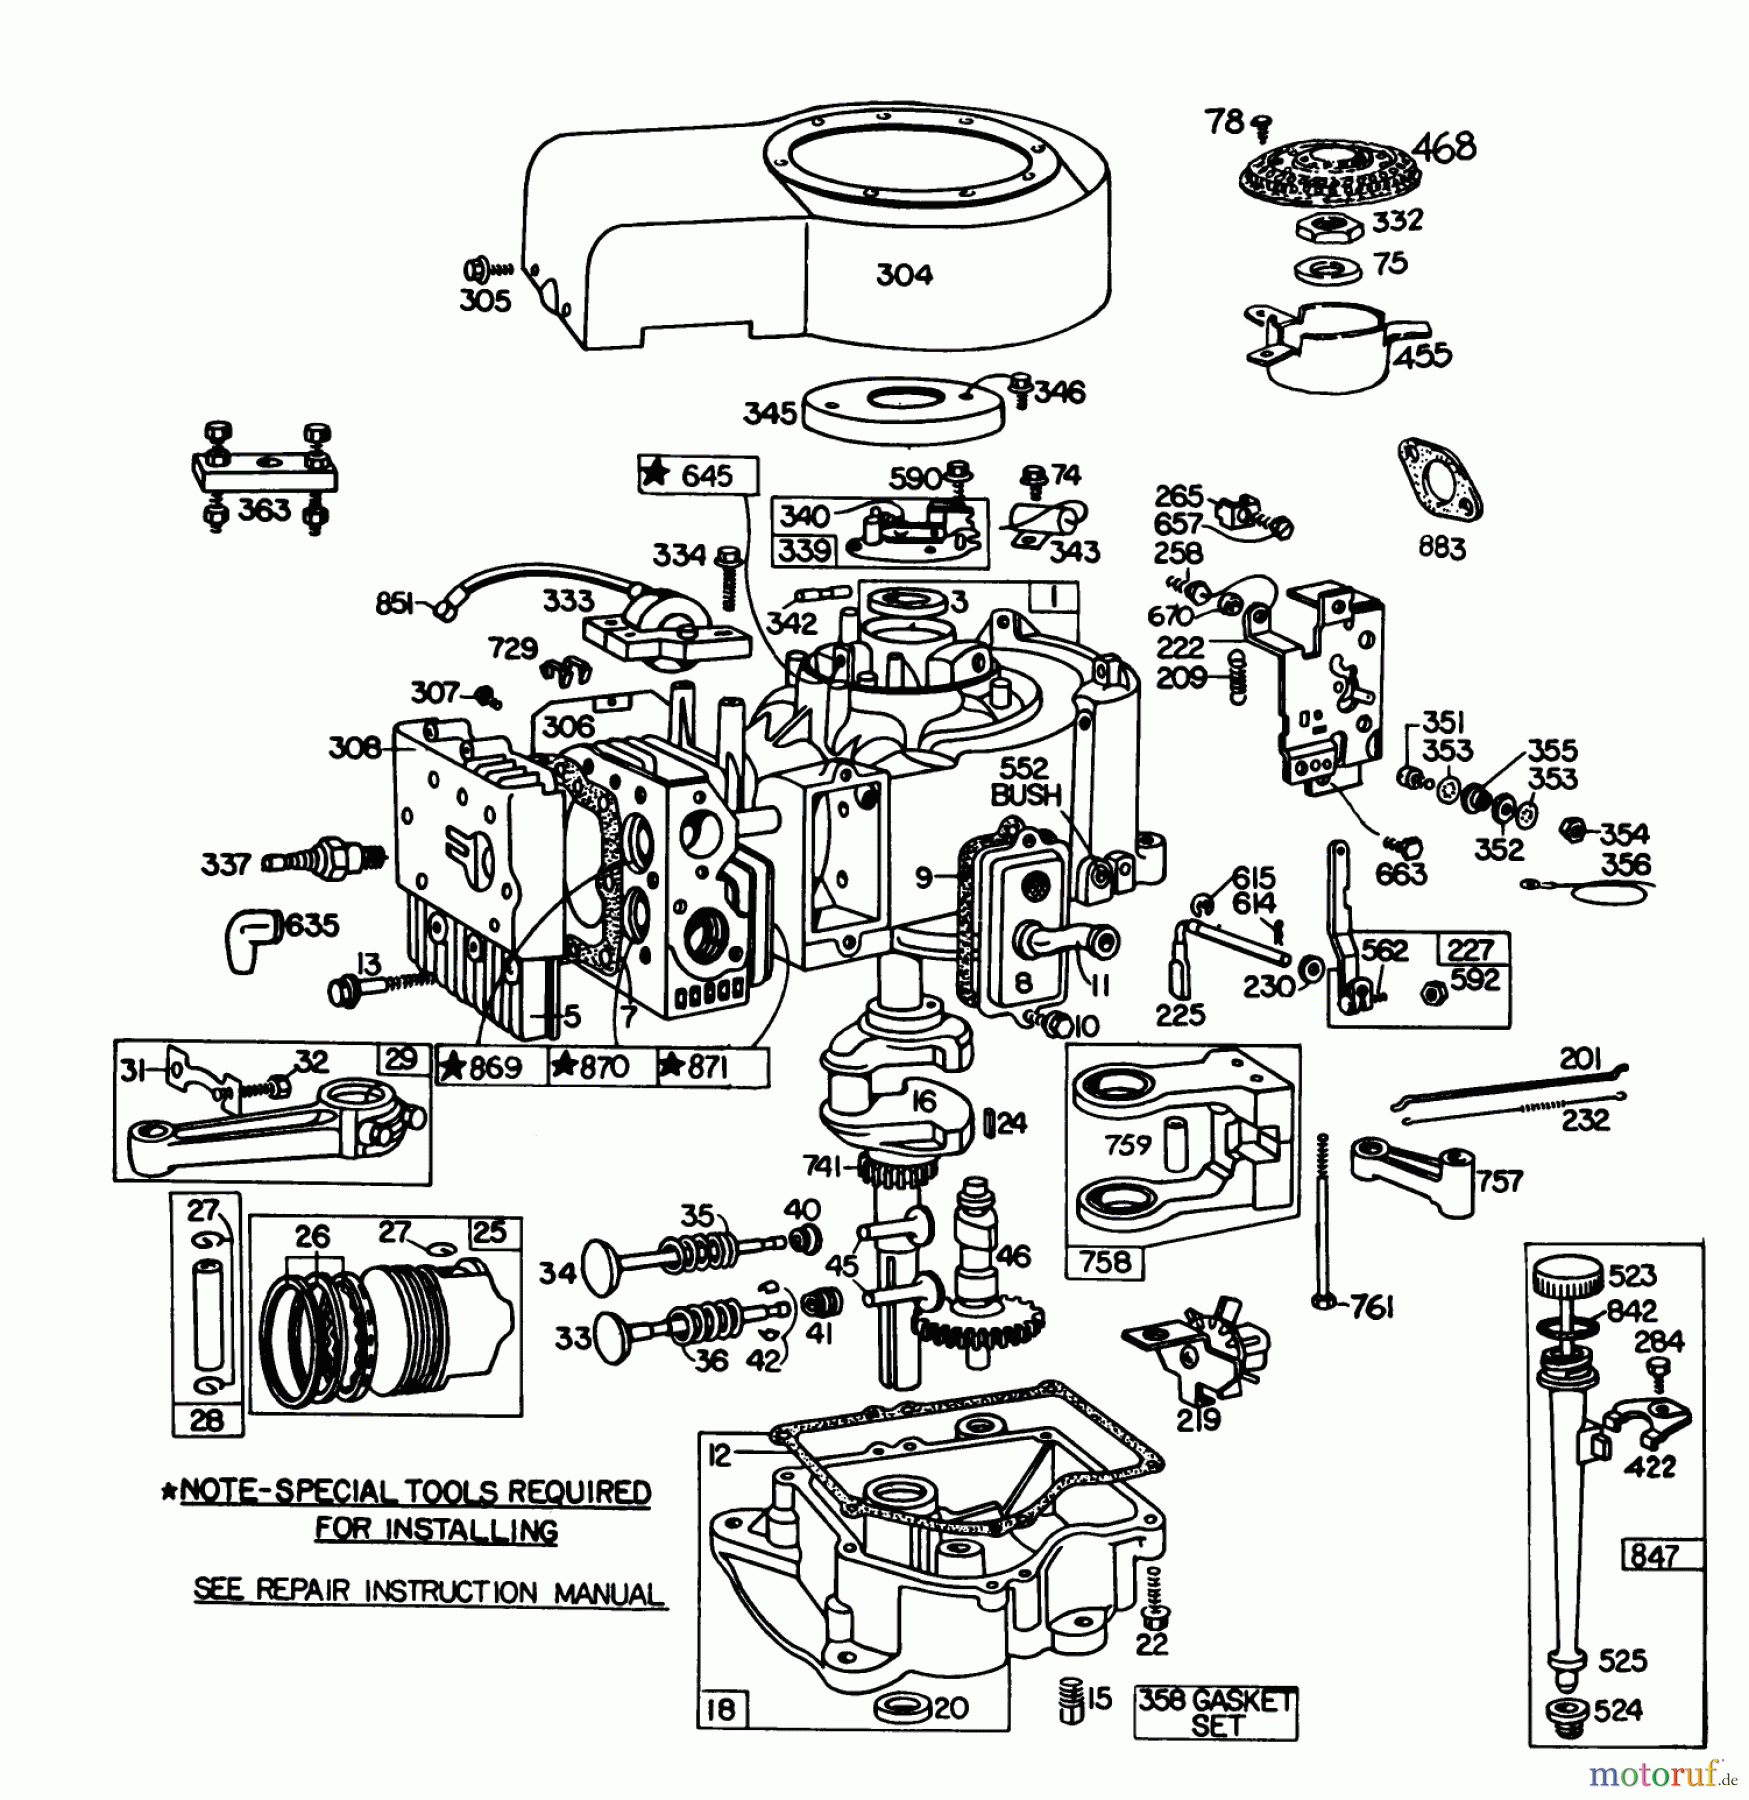  Toro Neu Mowers, Lawn & Garden Tractor Seite 1 57385 - Toro 11 hp Front Engine Rider, 1981 (1000001-1999999) ENGINE BRIGGS & STRATTON MODEL 252707-0223-01, ENGINE BRIGGS & STRATTON MODEL 252707-0177-01